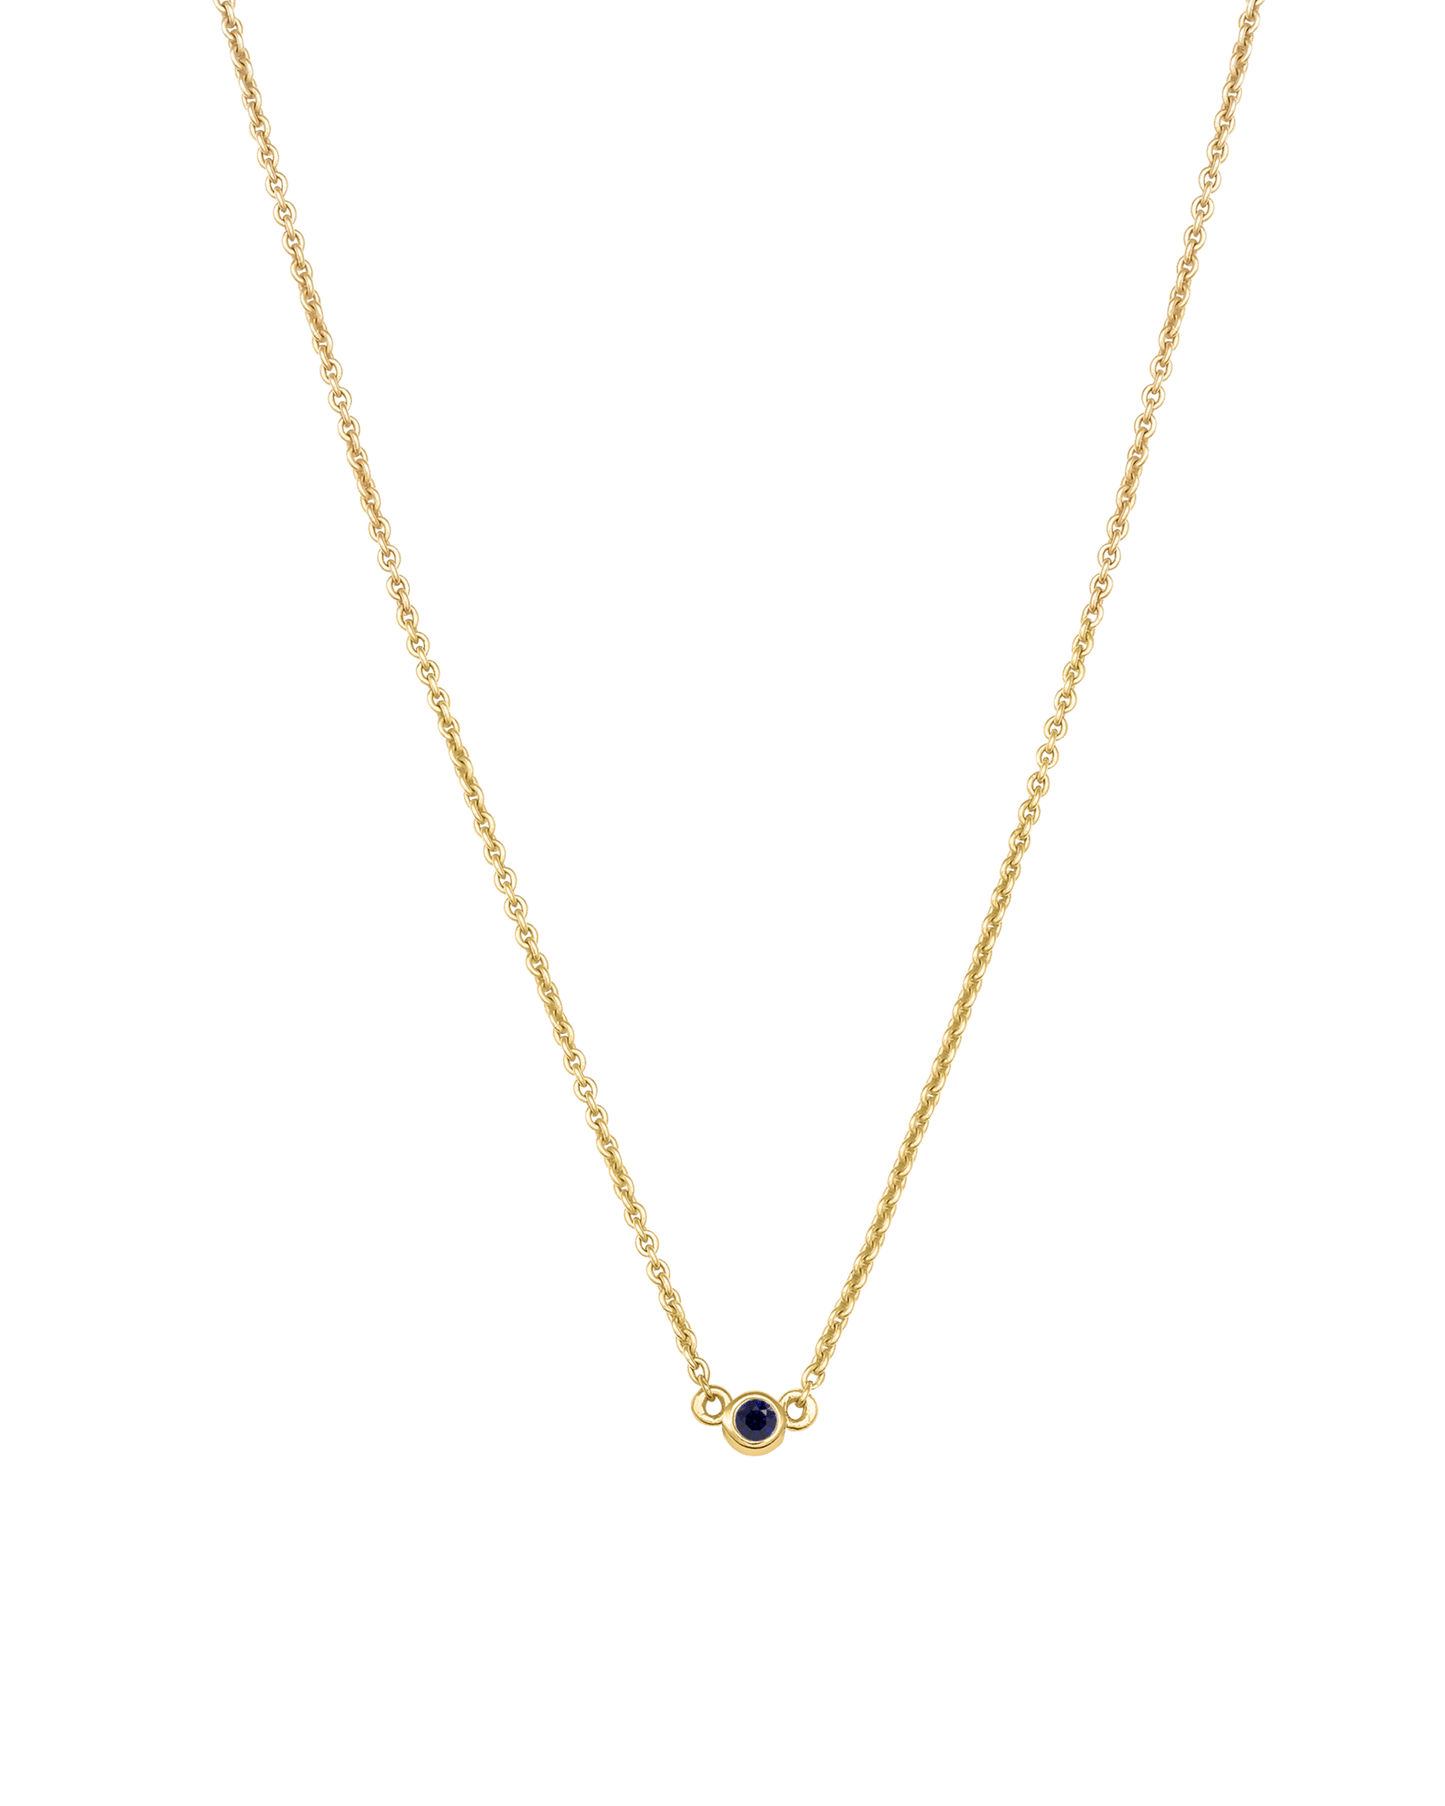 Bauble Birthstone Necklace - 18K Gold Vermeil Necklaces Gold Vermeil 1 Birthstone Small - 16" 